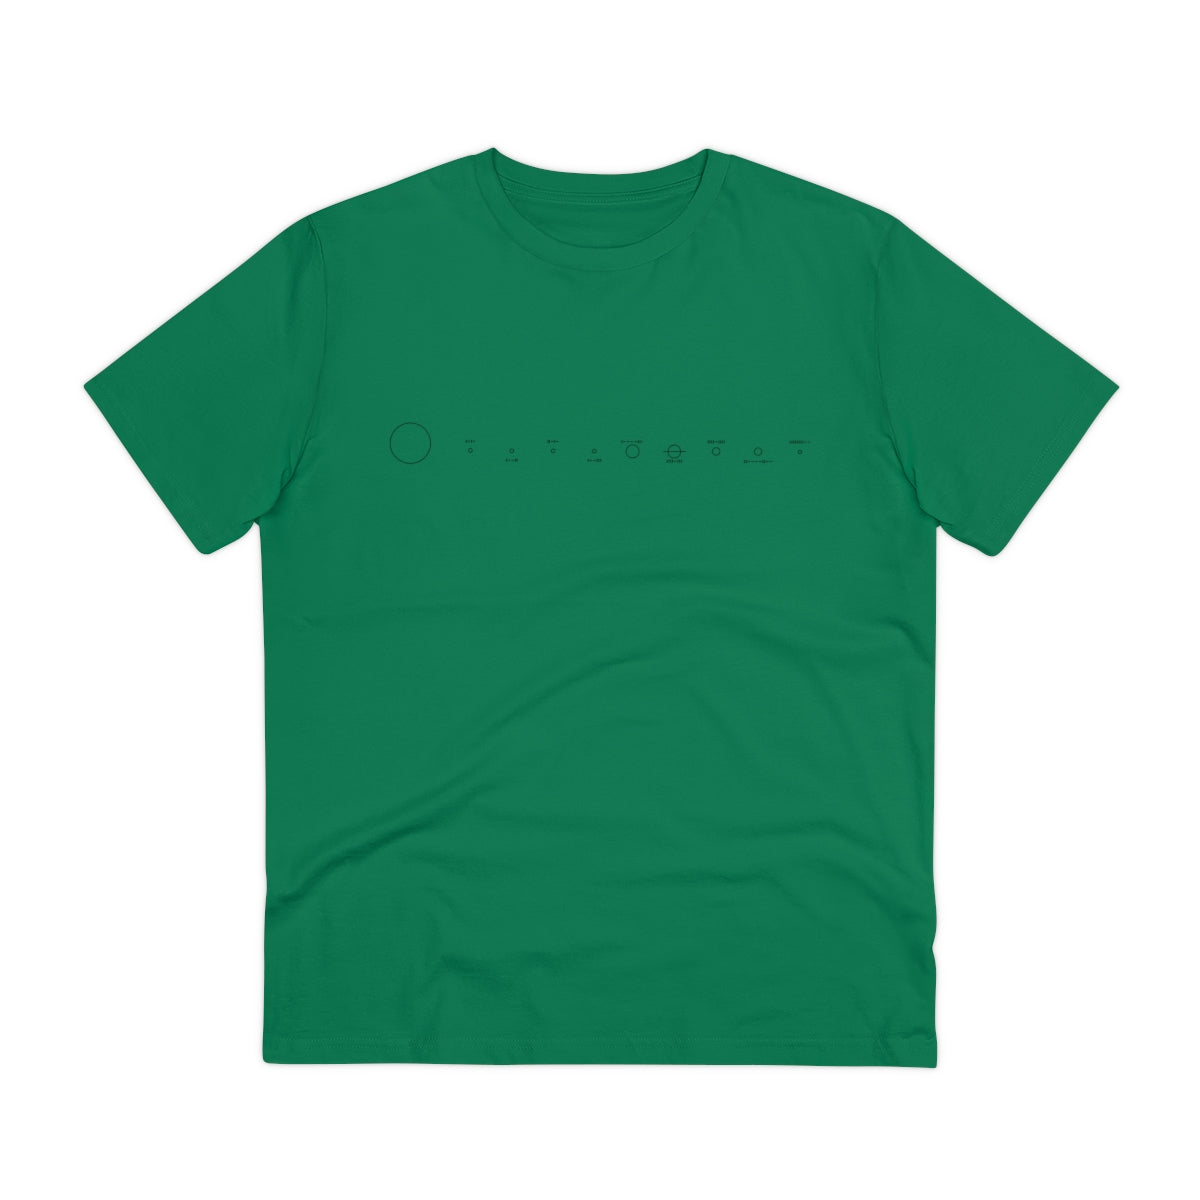 Pioneer - Premium Organic T-shirt - Unisex